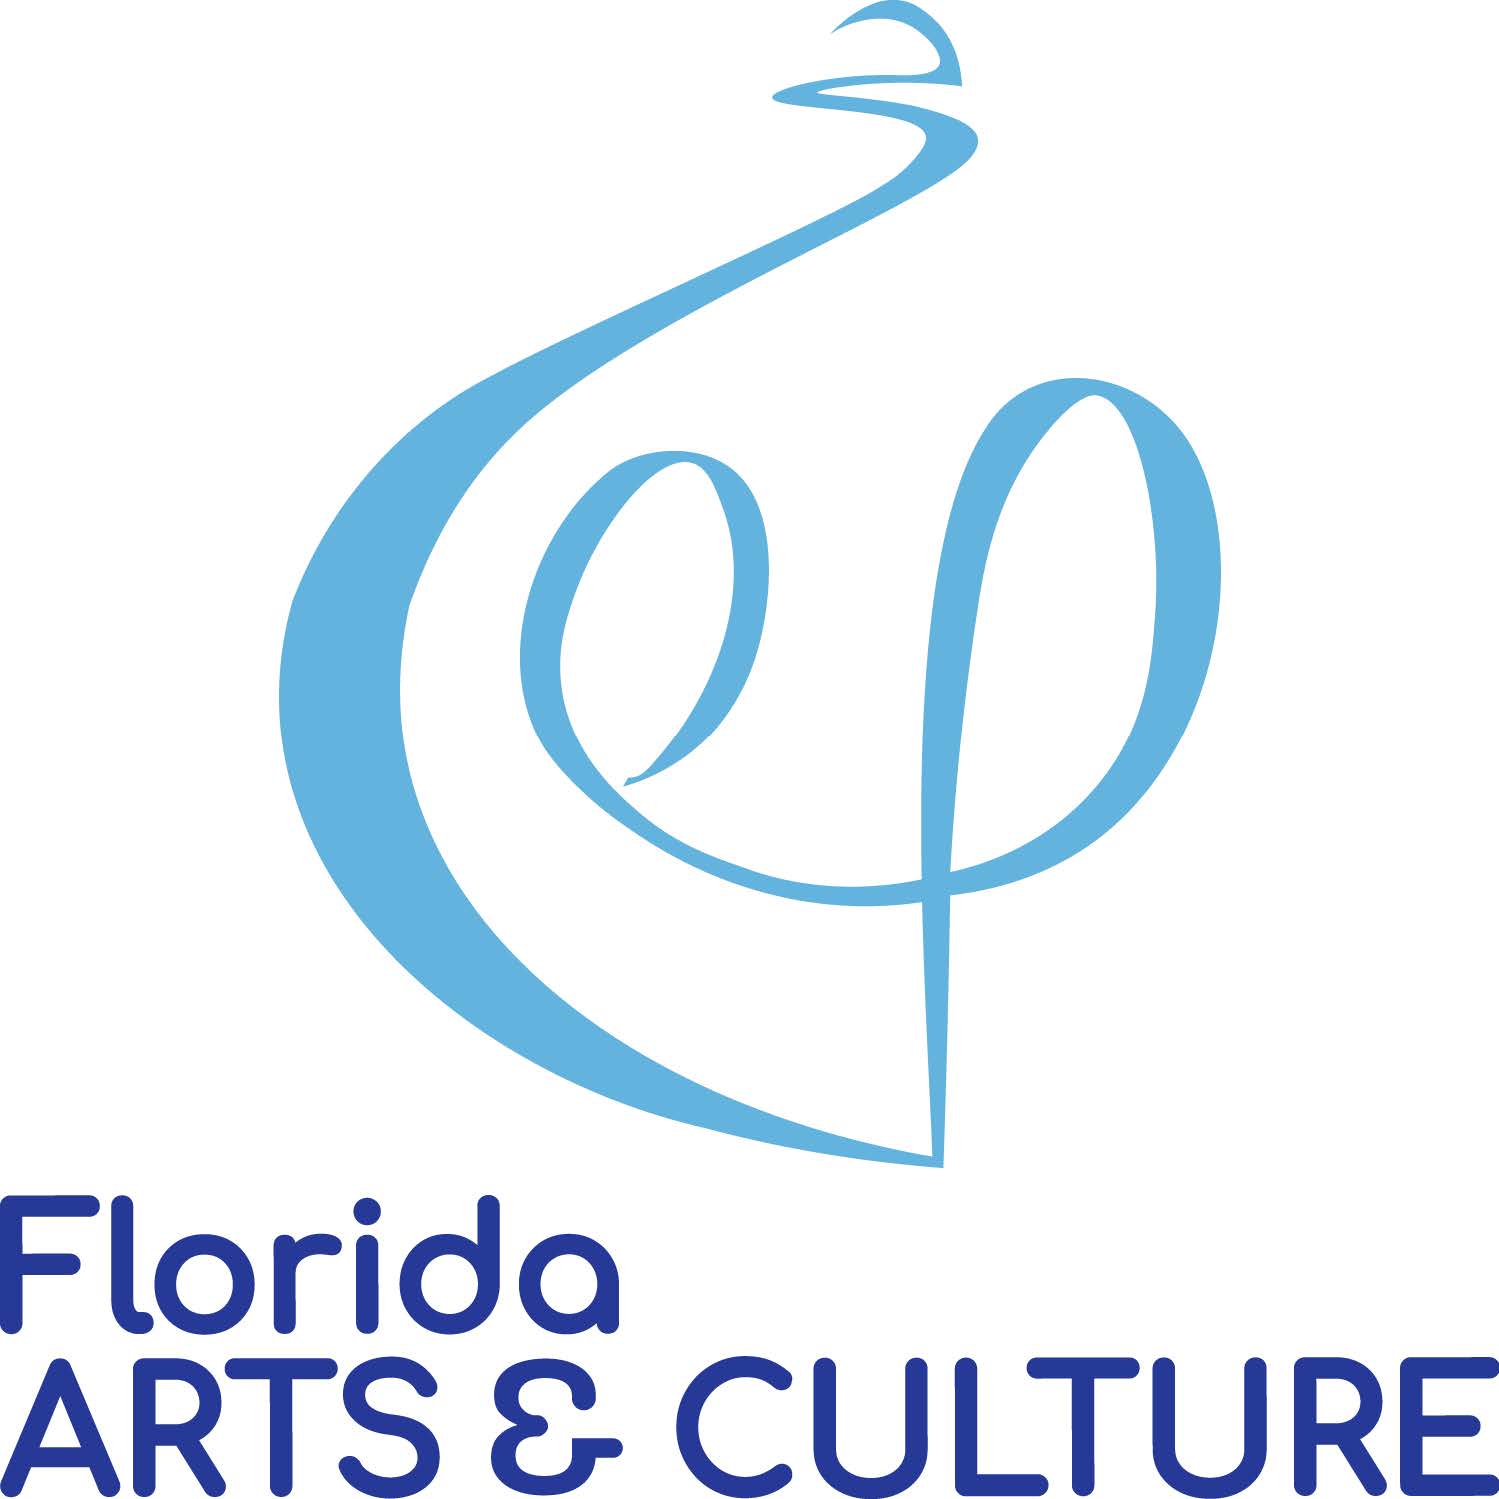 Florida Arts and culture